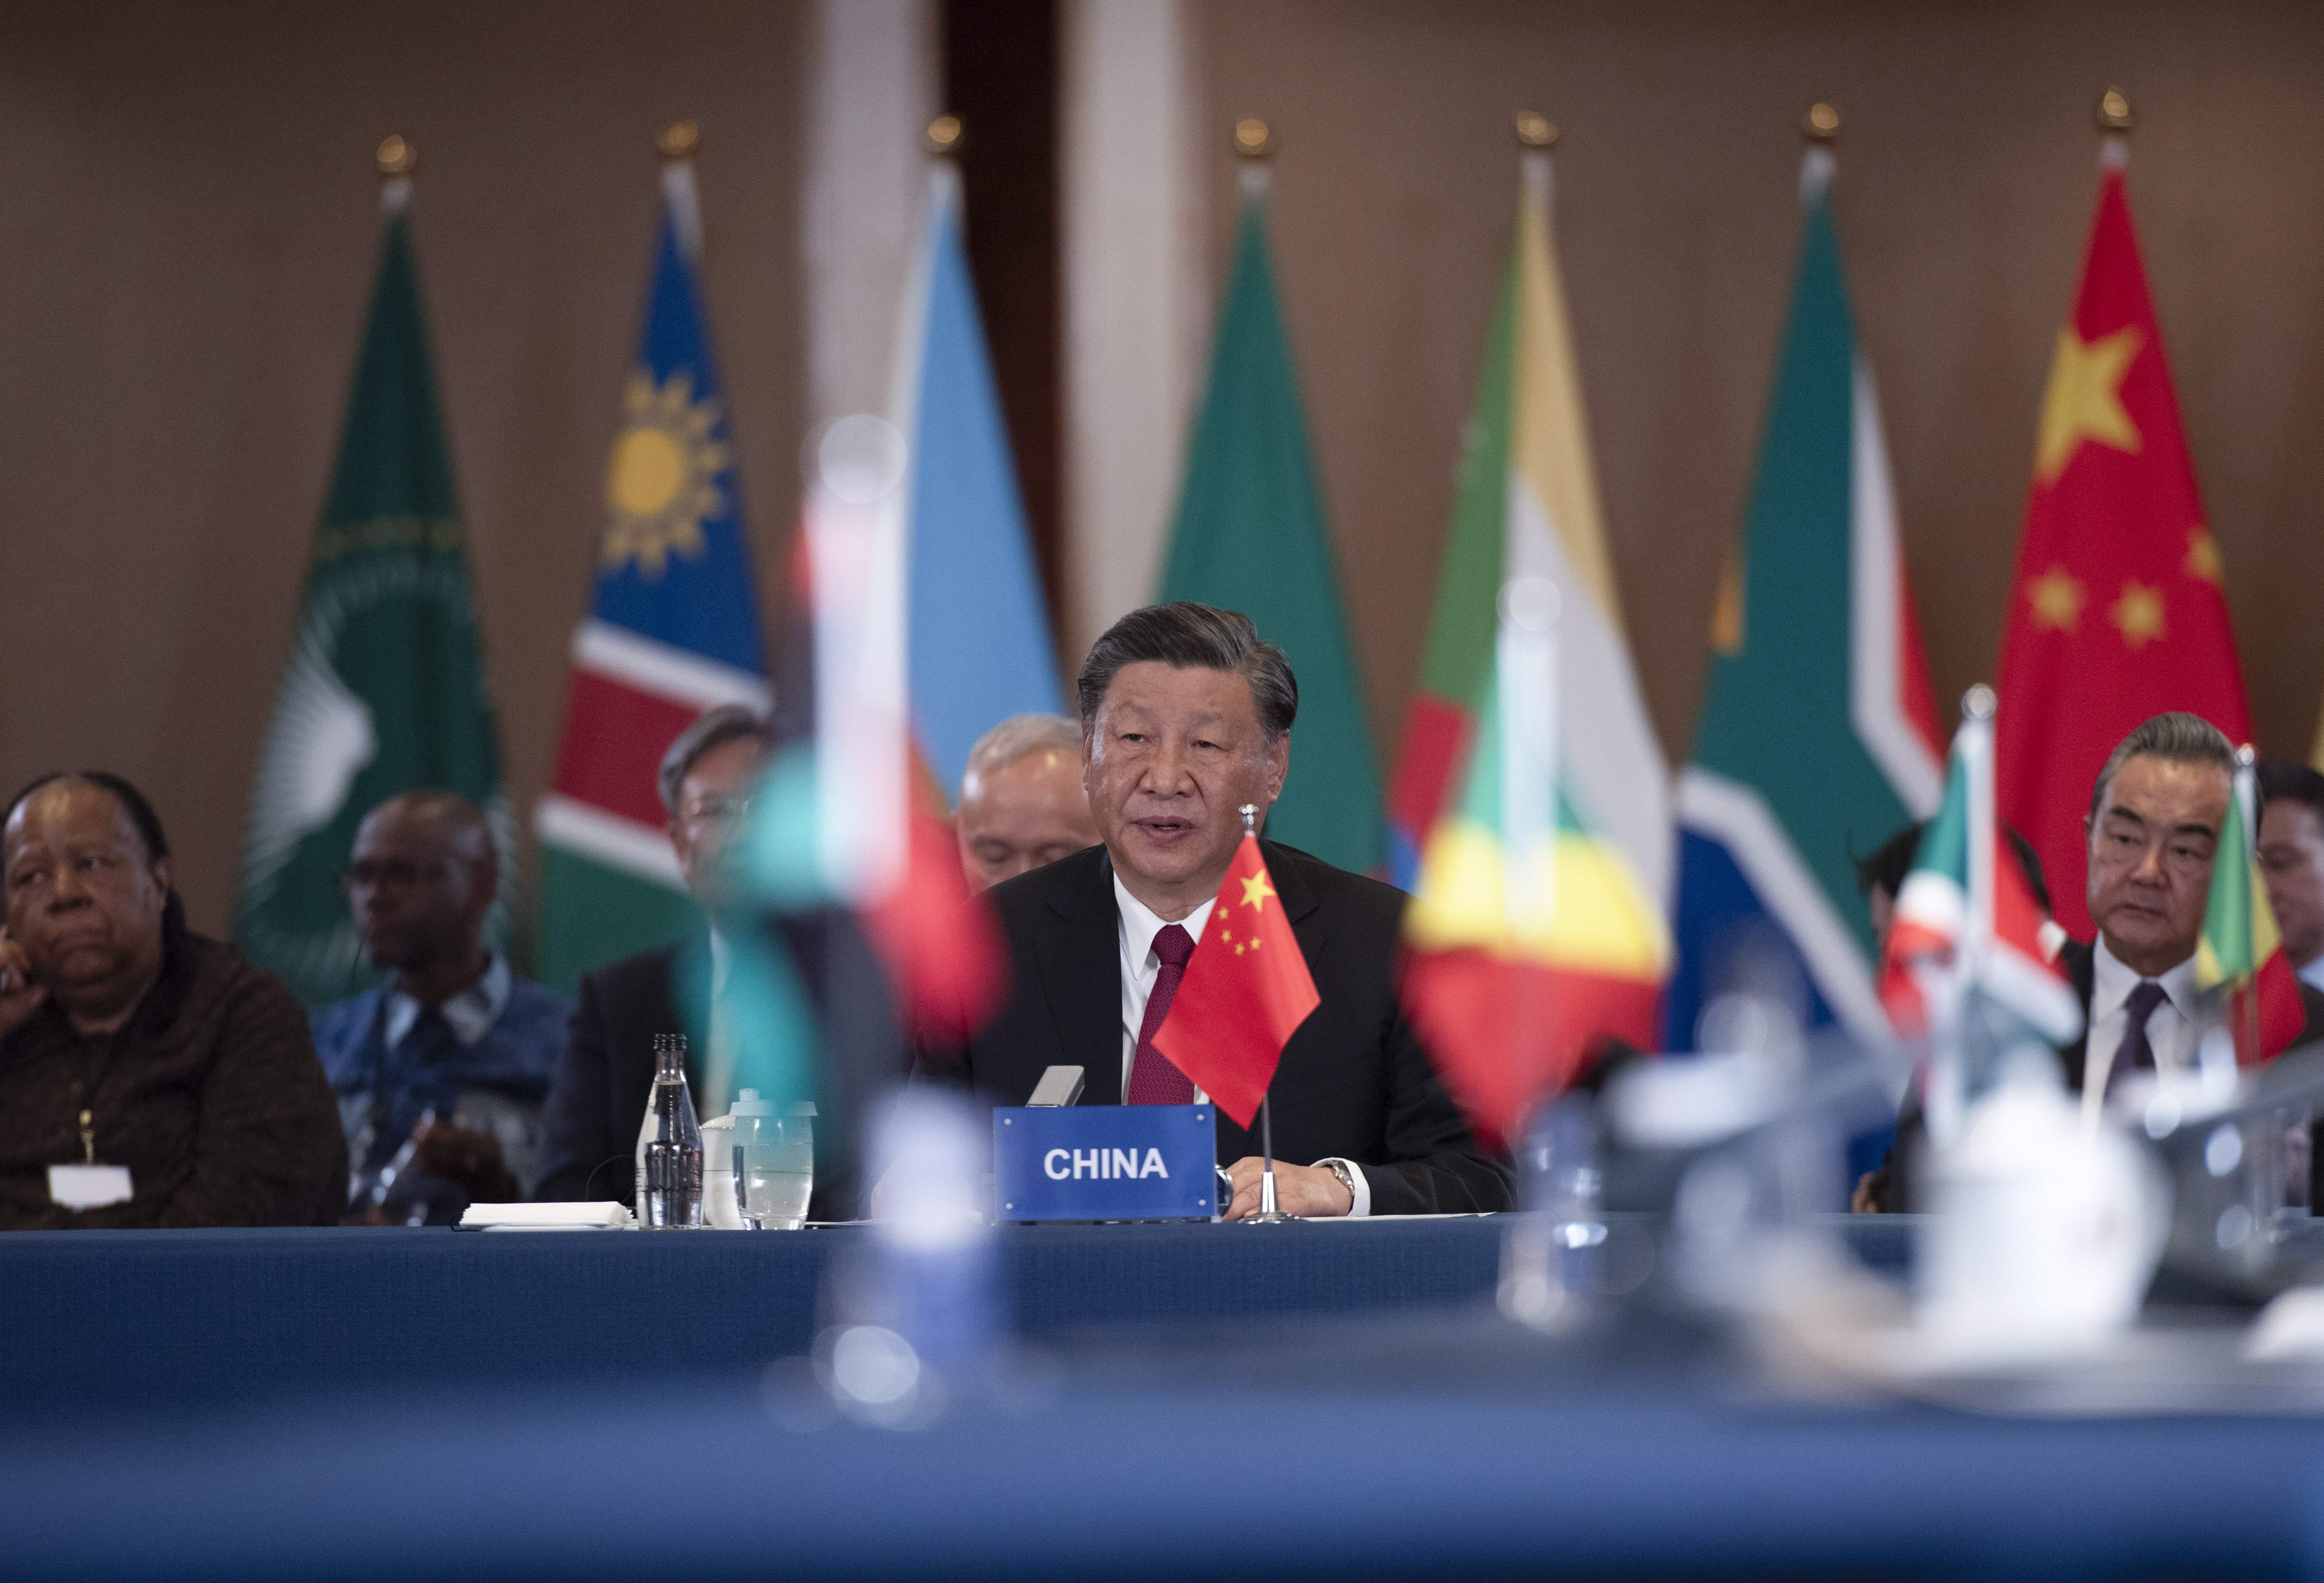 Ampliació dels BRICS: què implica per a l'ordre mundial?